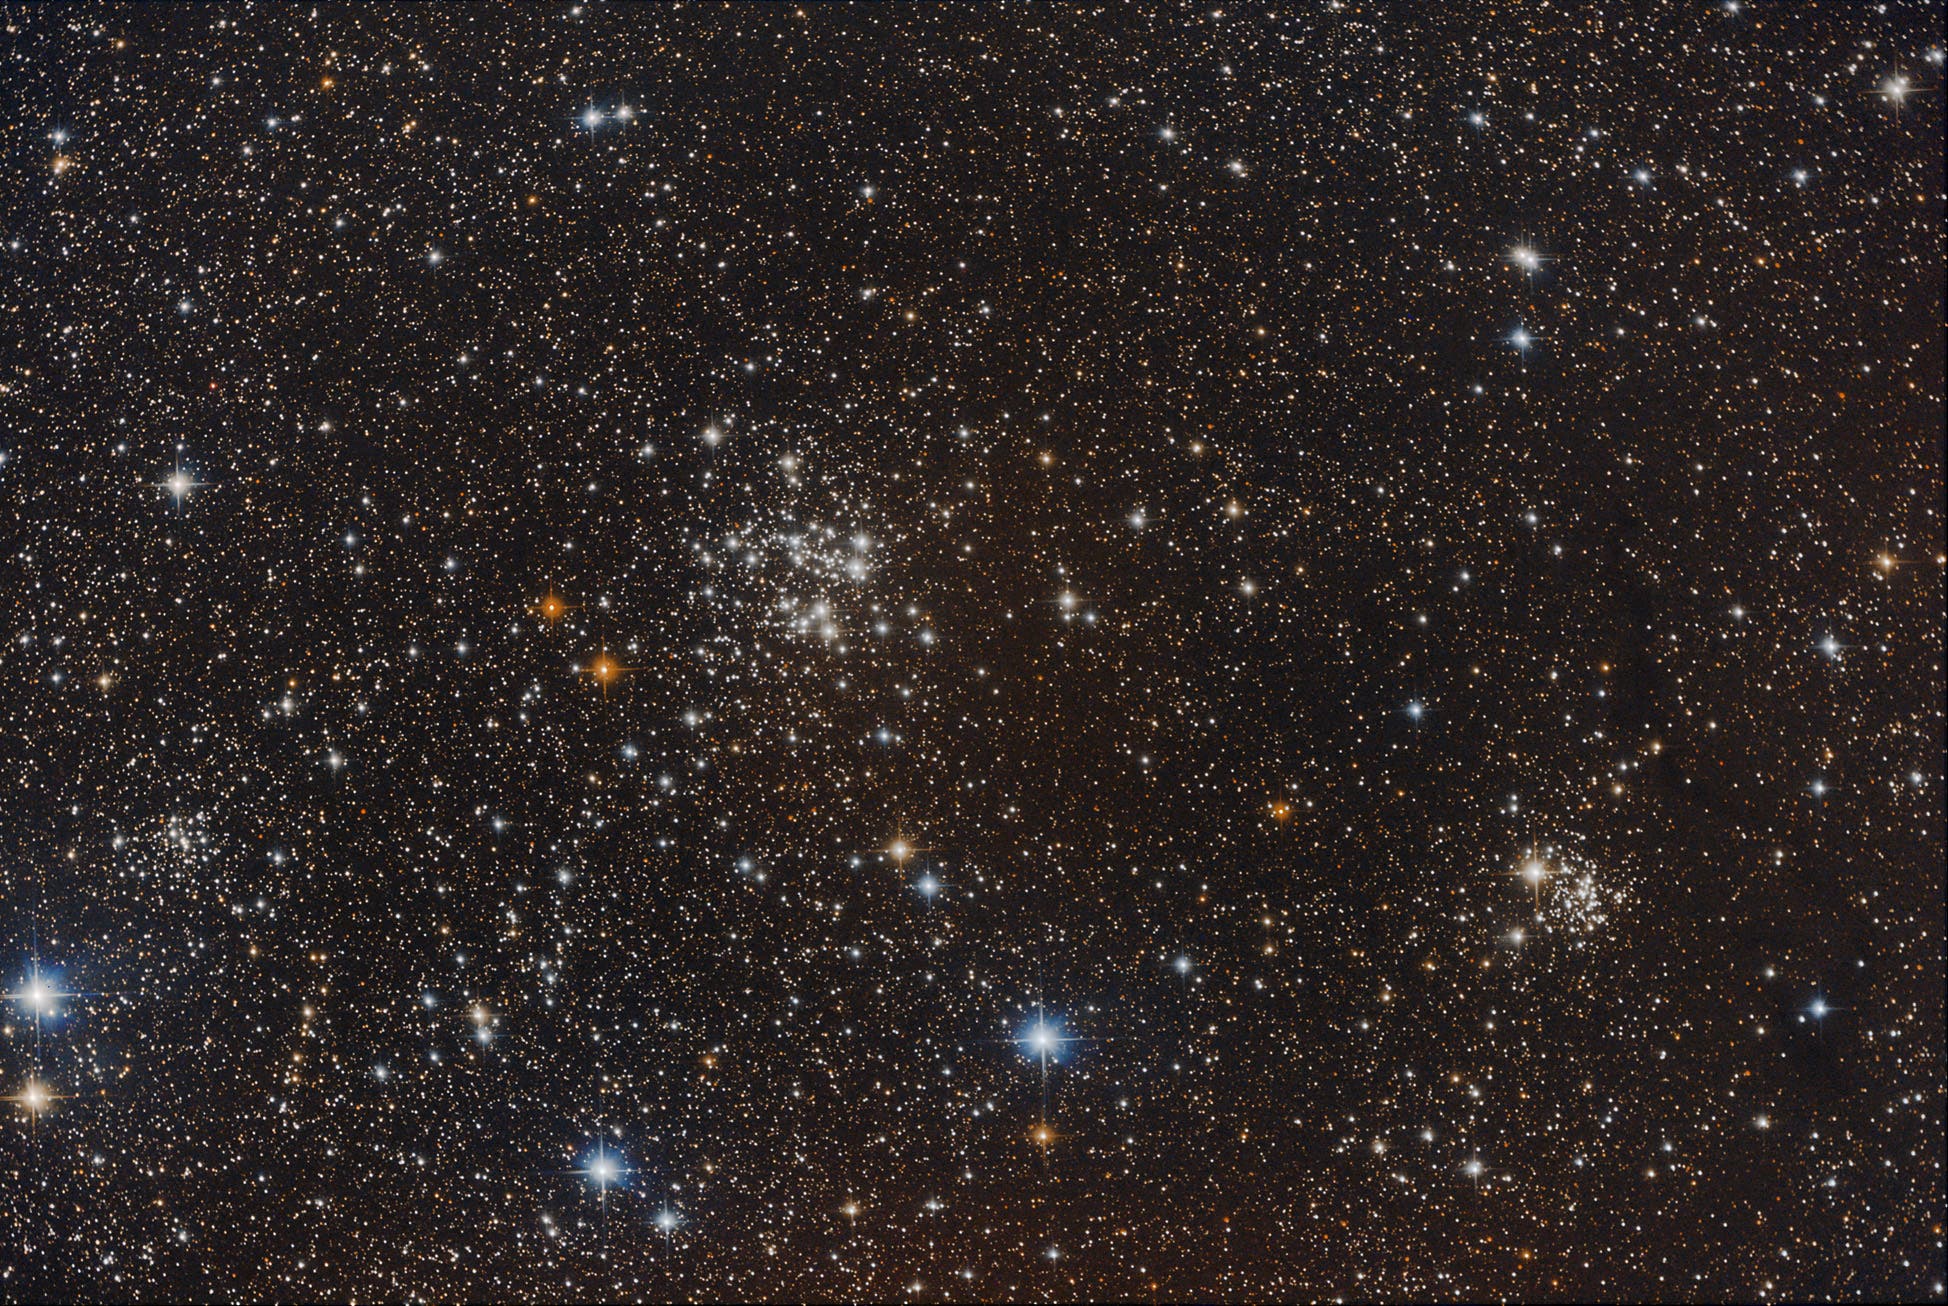 Offene Sternhaufen im Sternbild Kassiopeia